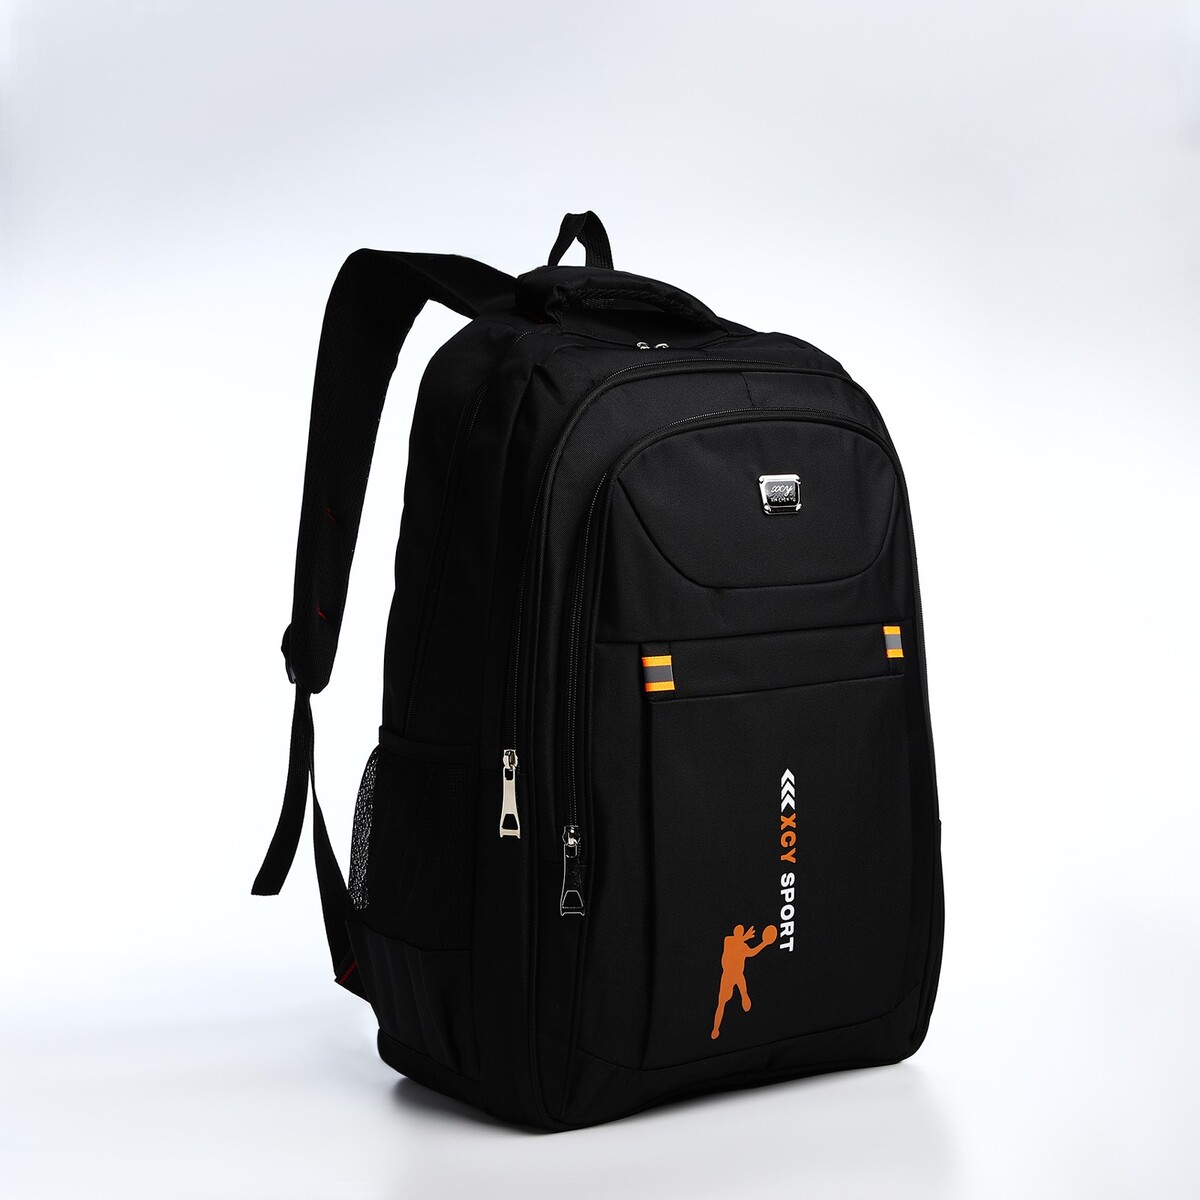 Рюкзак молодежный из текстиля, 2 отдела на молнии, 3 кармана, цвет черный/оранжевый рюкзак молодежный из текстиля на молнии 4 кармана оранжевый